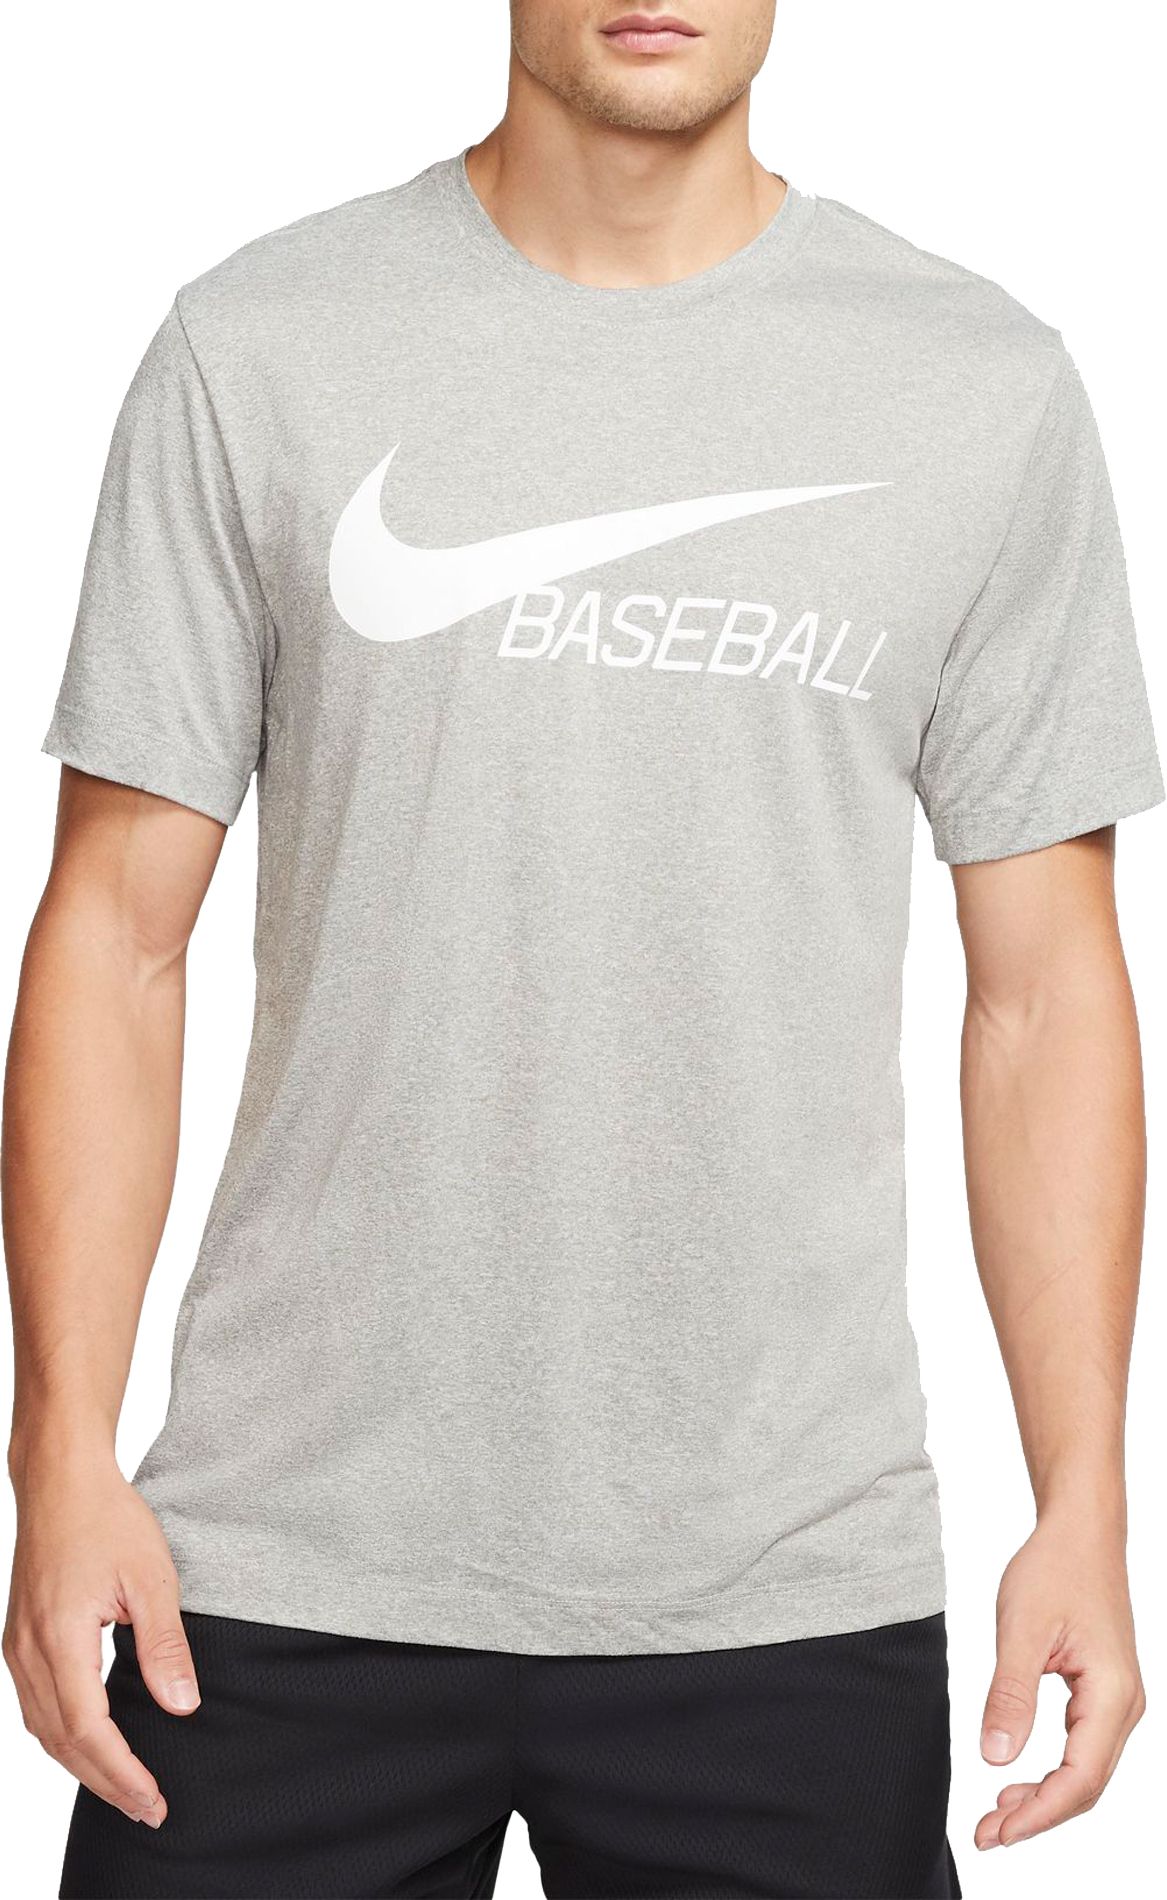 Nike / Men's Legend Dri-FIT Baseball T-Shirt